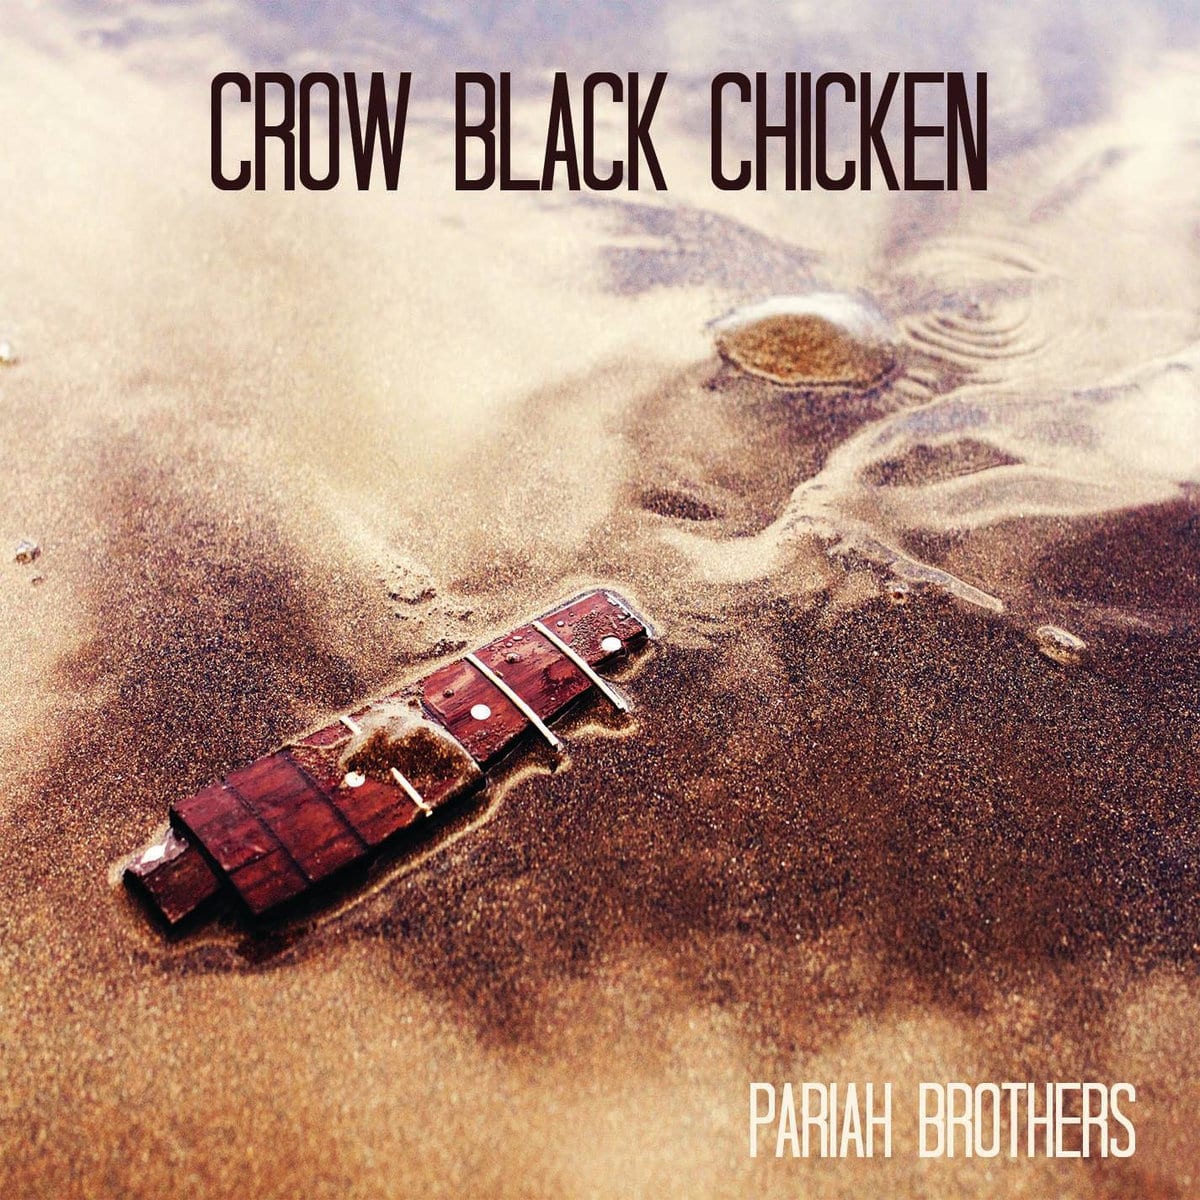 CROW BLACK CHICKEN – Pariah Brothers. Reseña y fechas de gira española